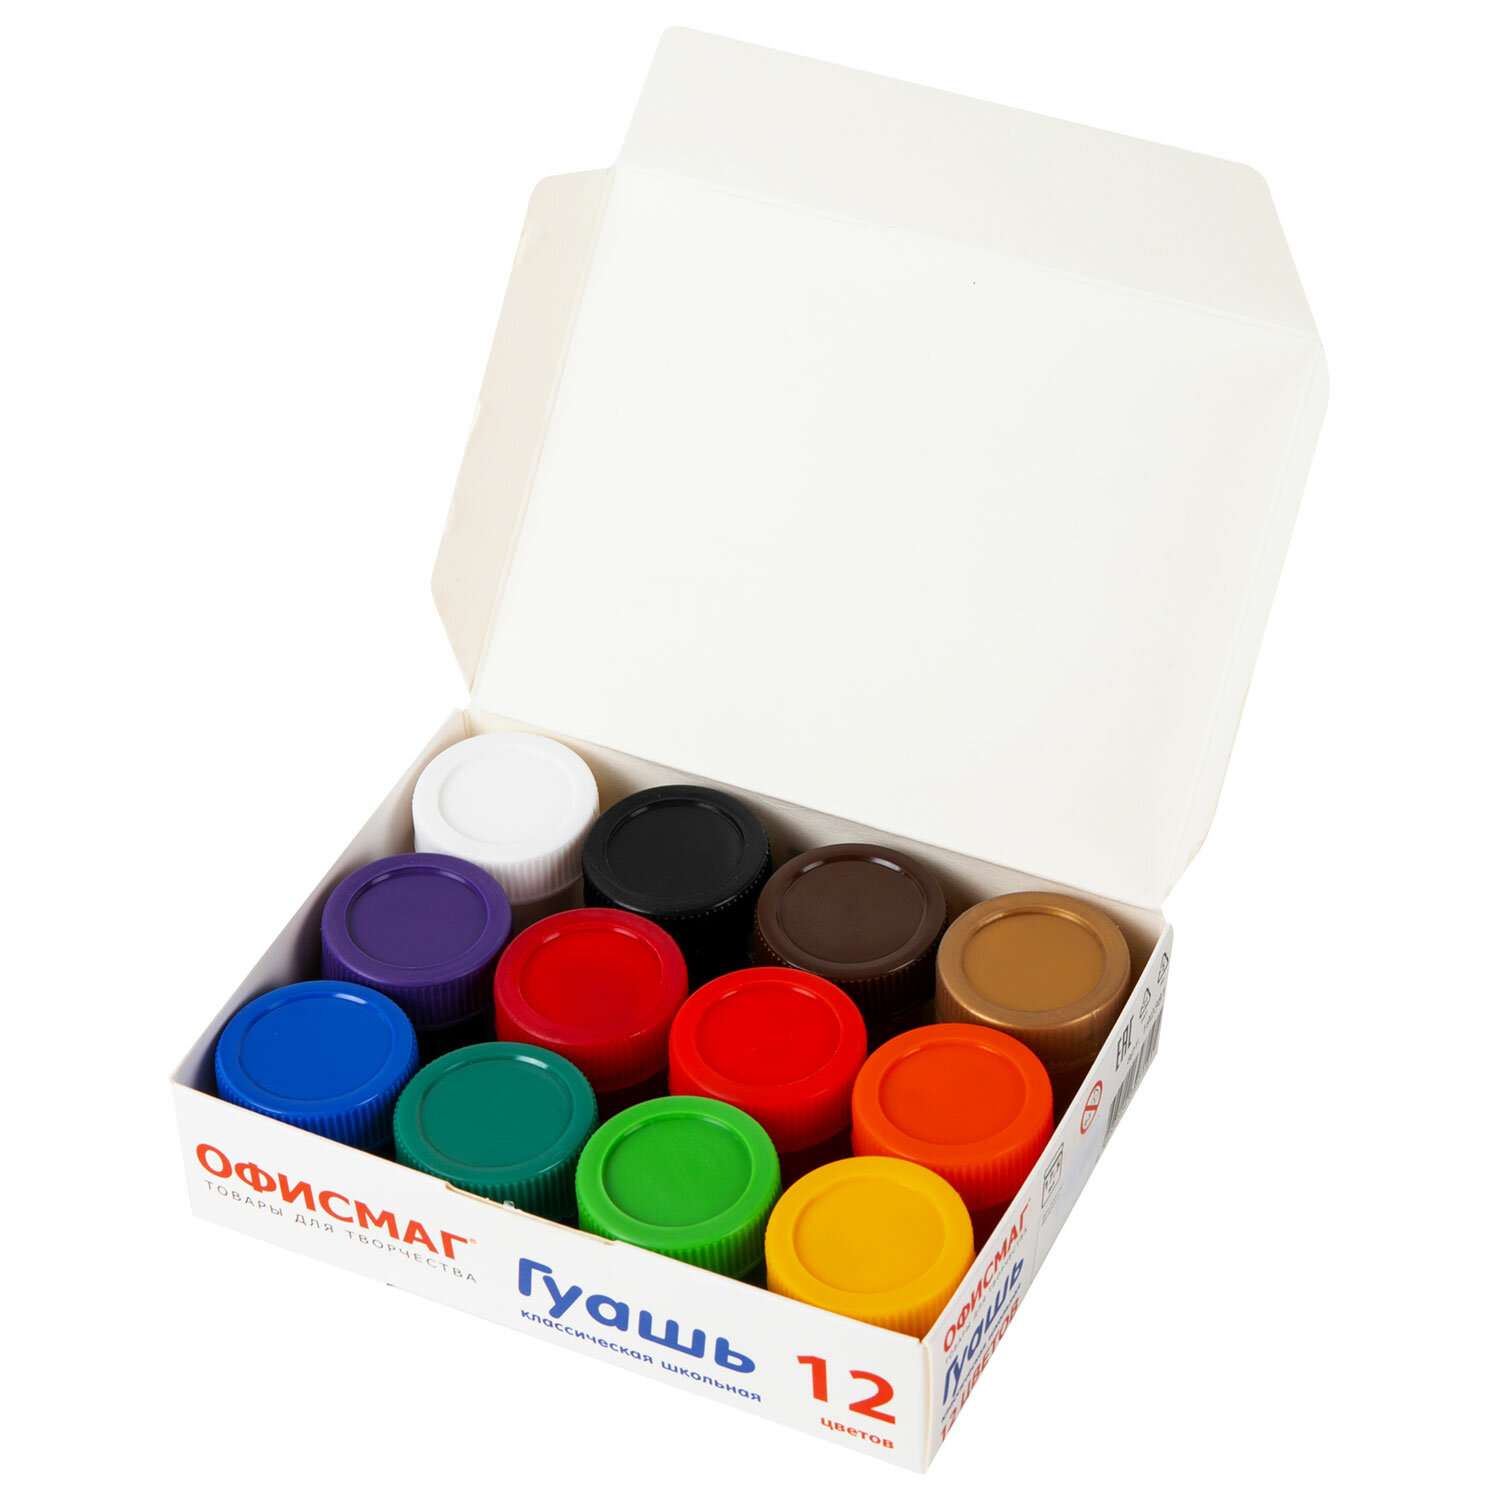 Гуашь краска ОФИСМАГ для рисования школьная 12 цветов по 17 мл - фото 4